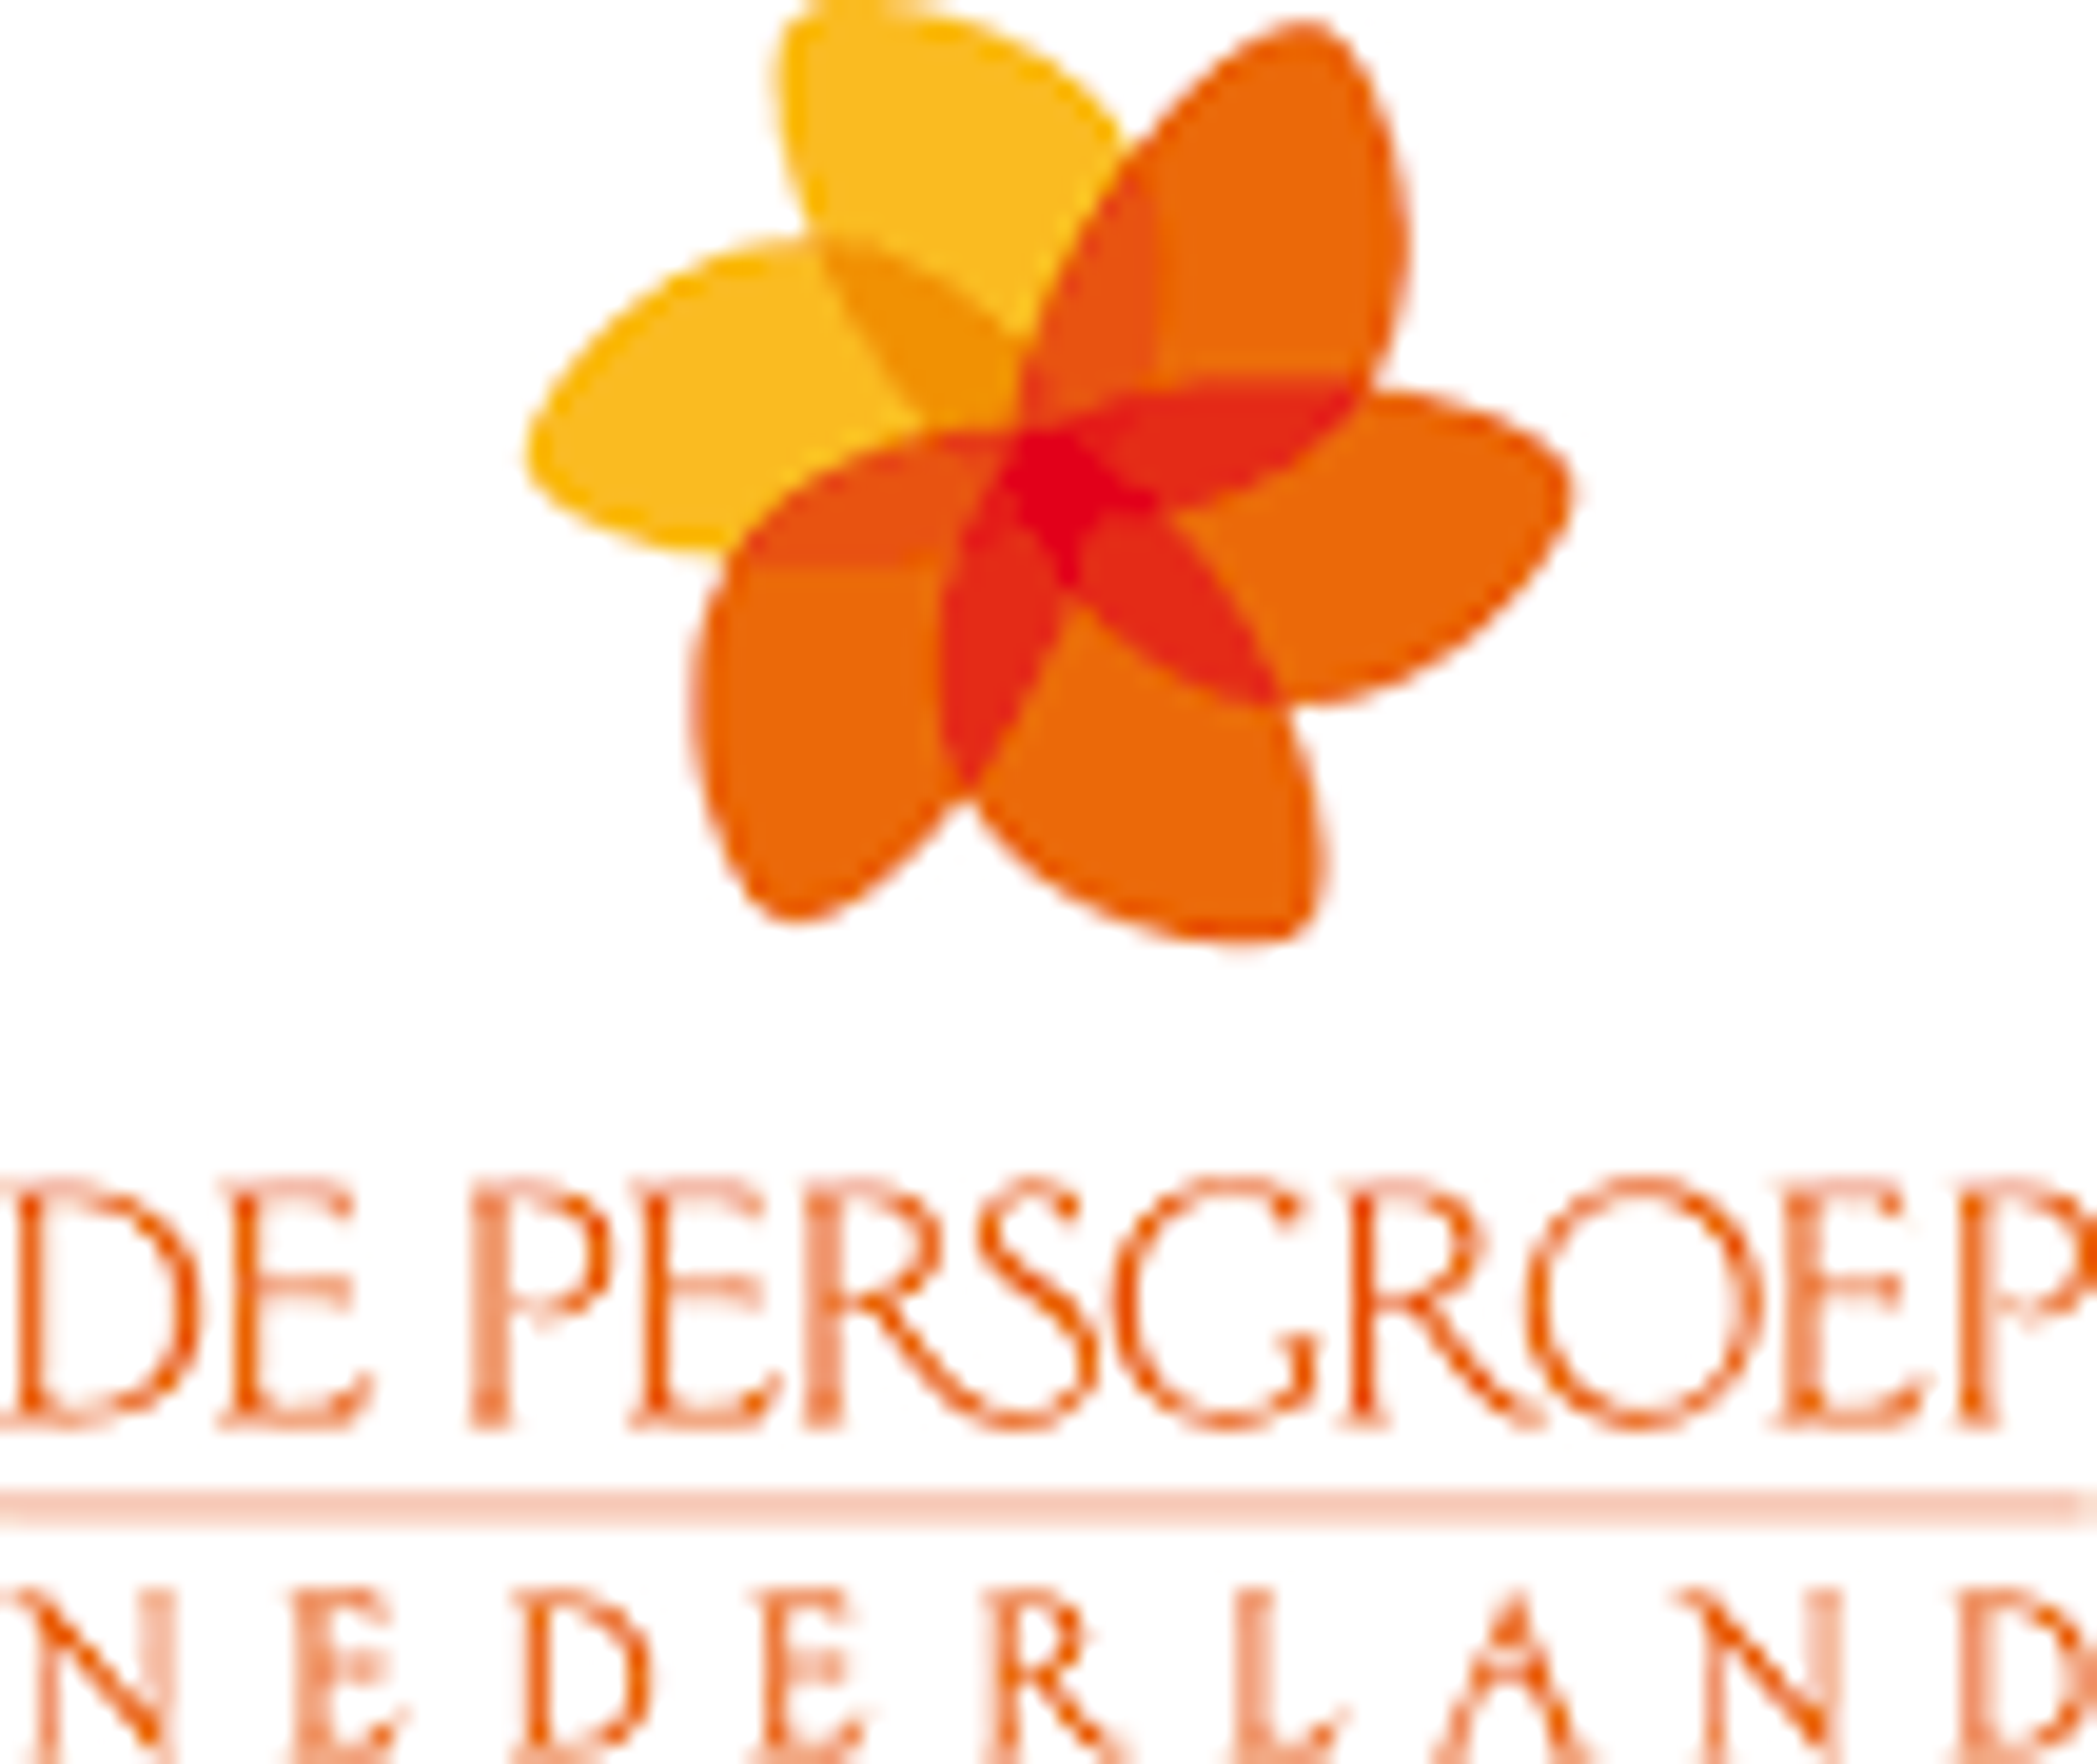 De Persgroep Nederland gaat de advertentieverkoop van de titels van de NDC mediagroep aan nationale adverteerders verzorgen.